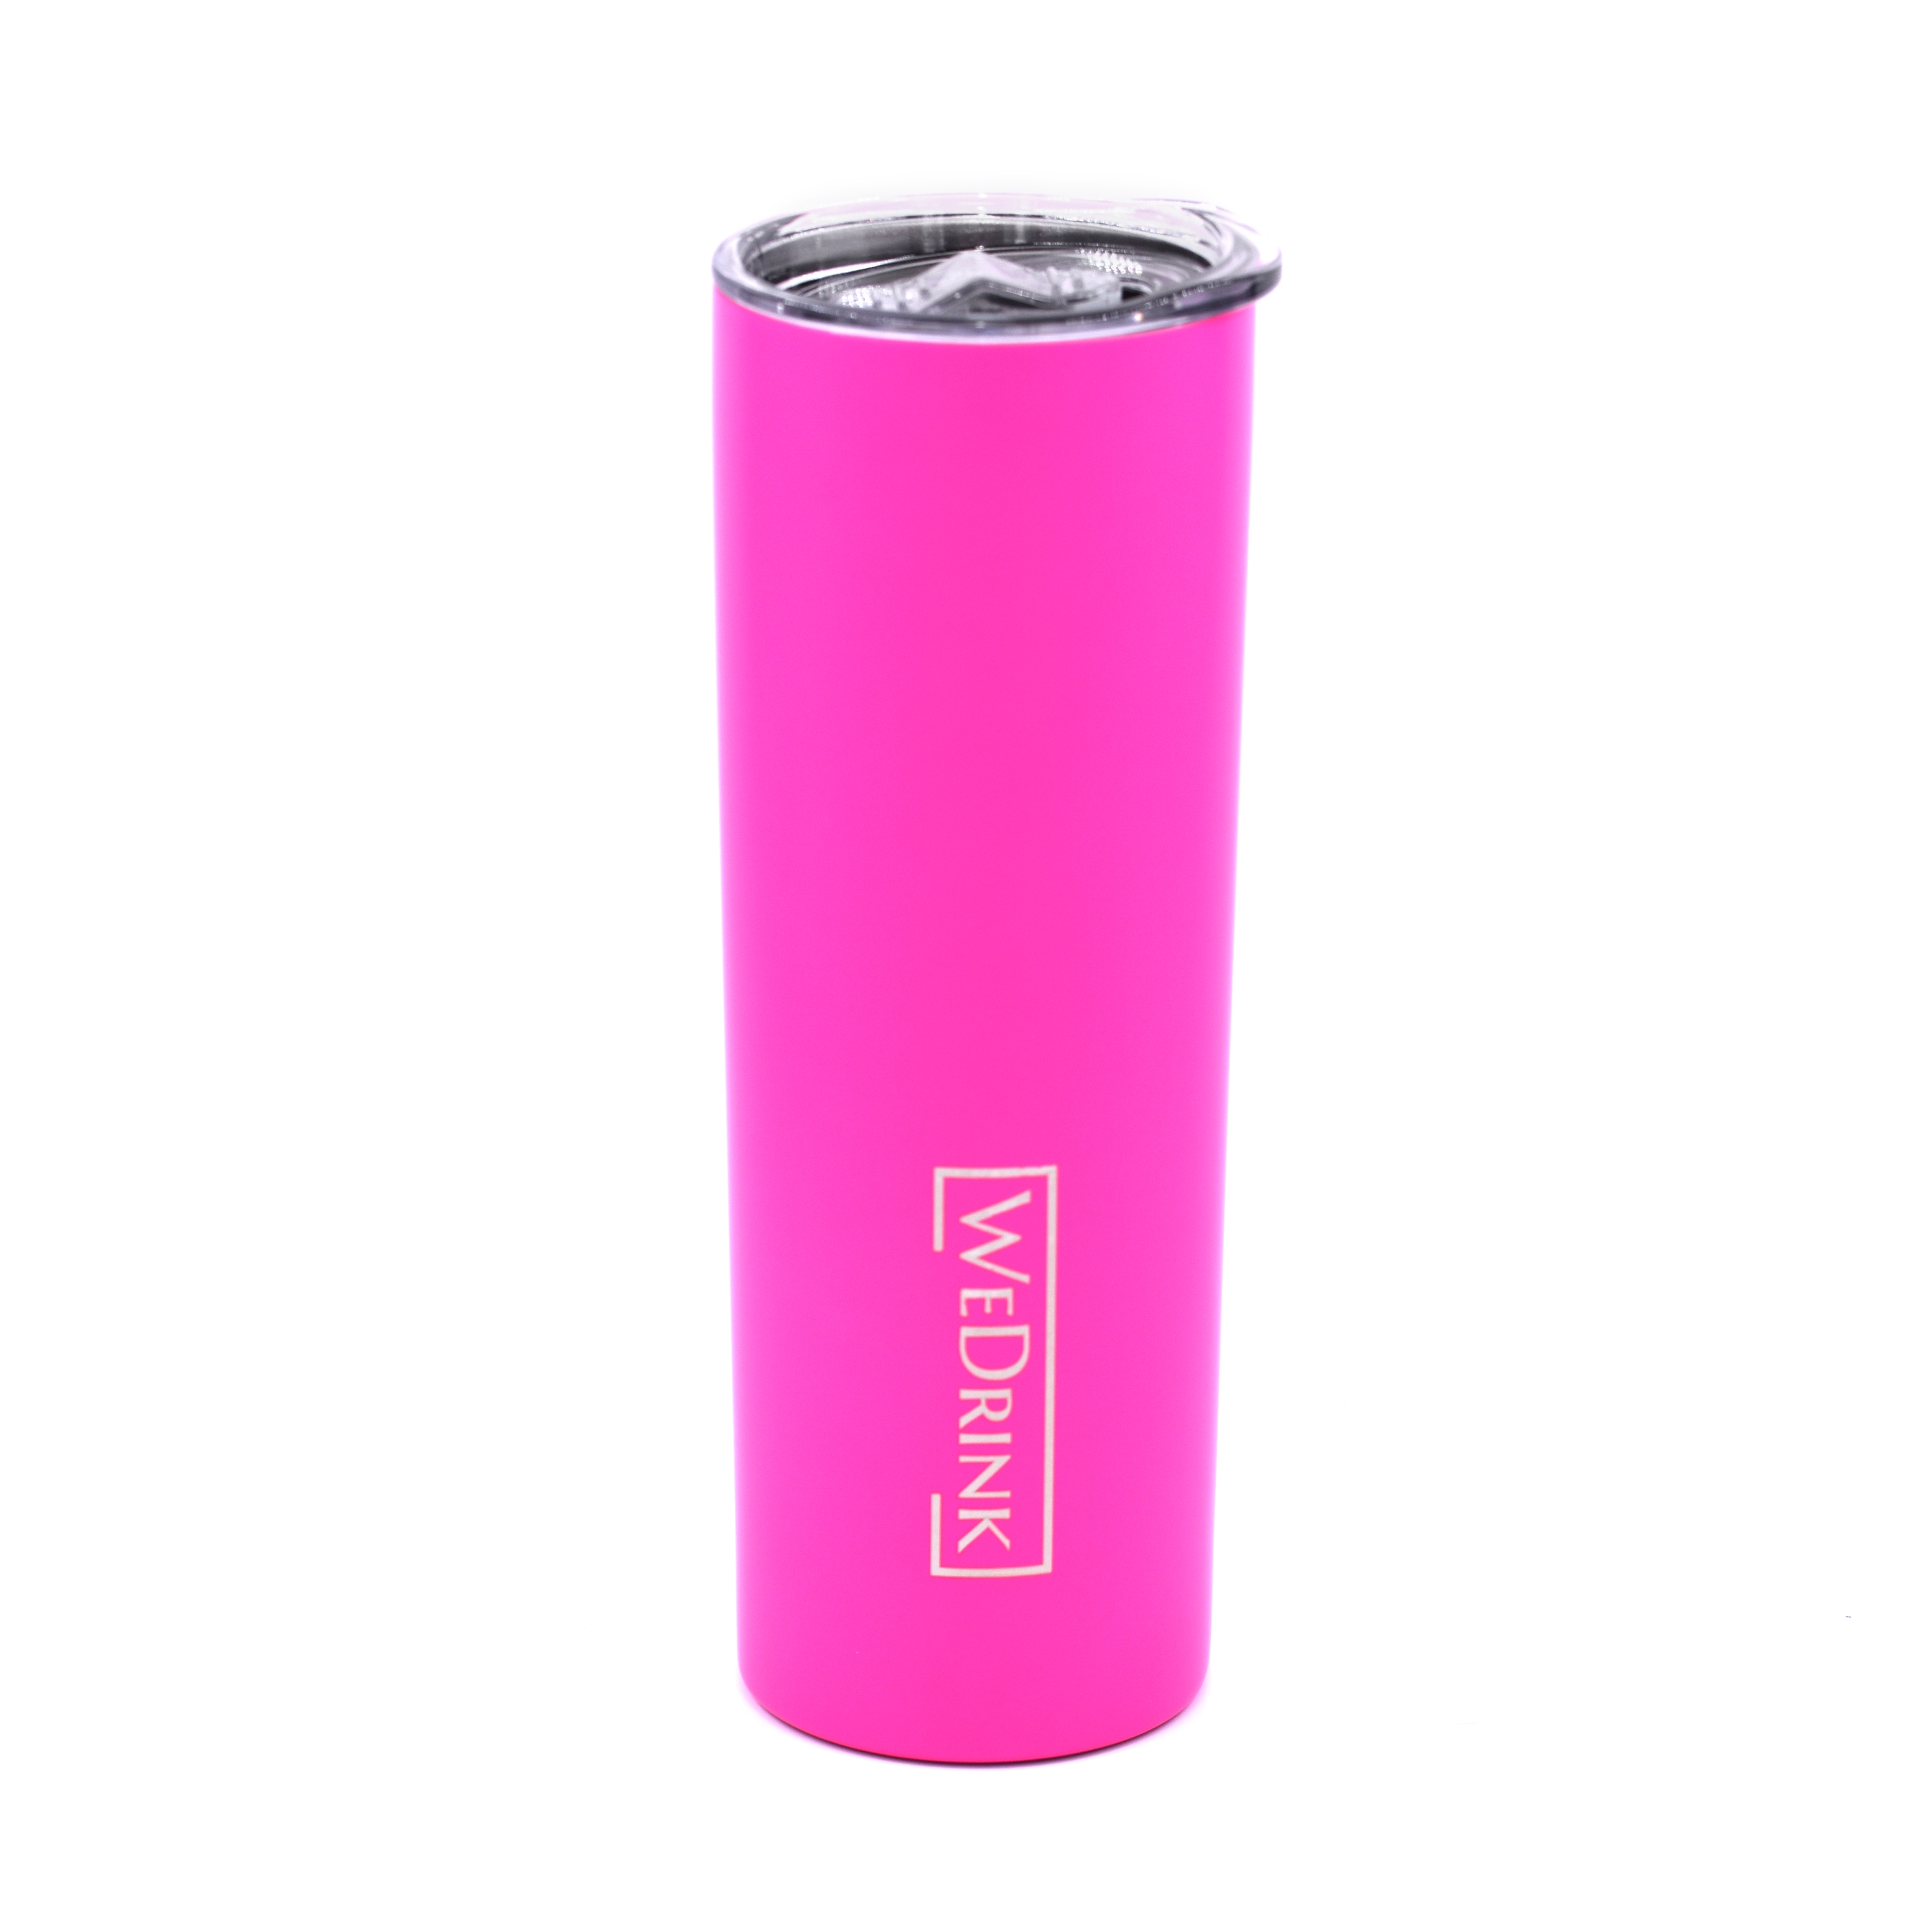 WEDRINK Tumbler 650 ml Hot Pink (WD-TU-08M)